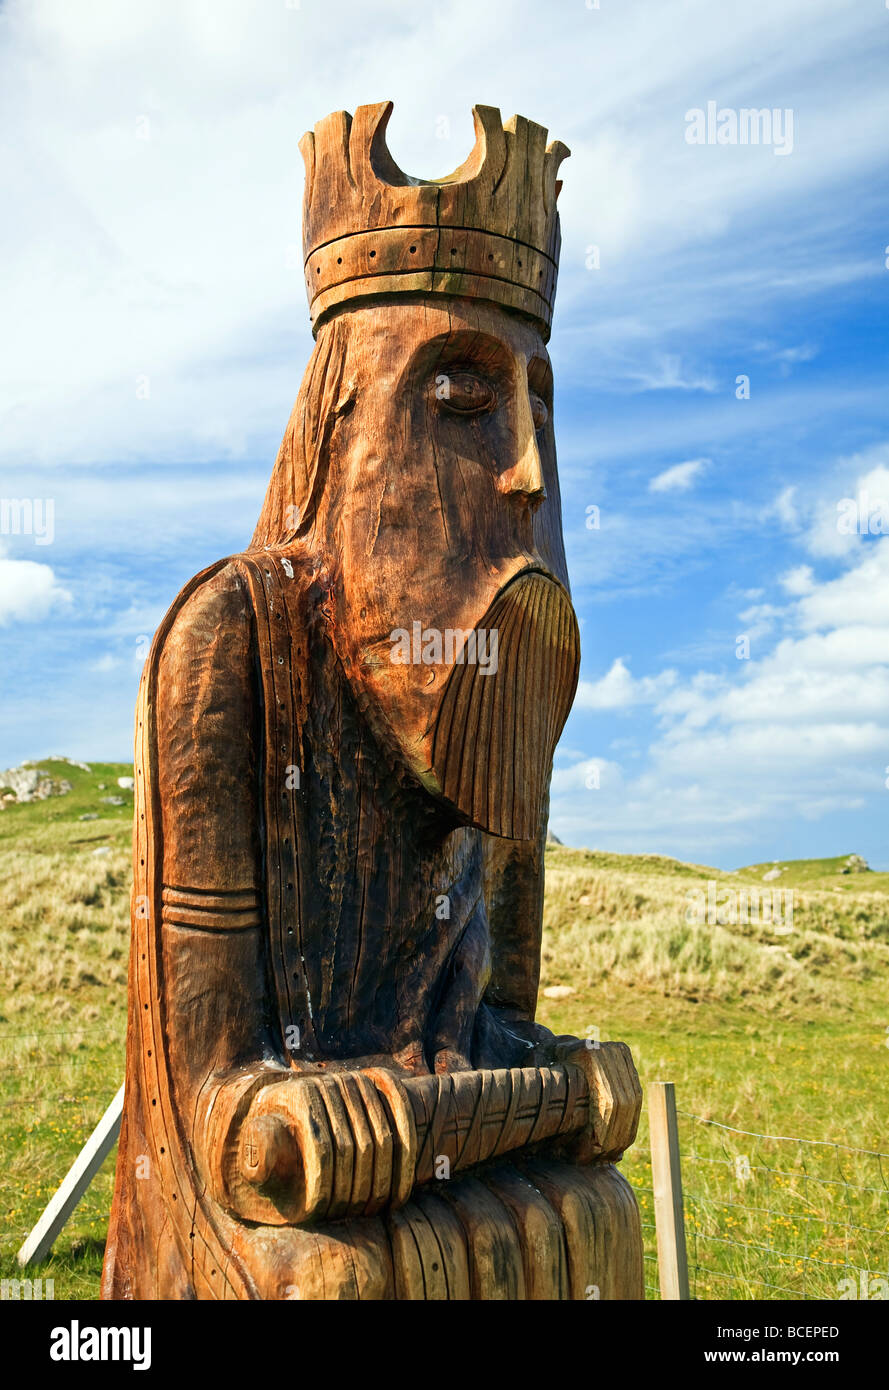 The Uig Chessman Isle of Lewis, Outer Hebrides, Western Isles, Scotland, UK 2009 Stock Photo